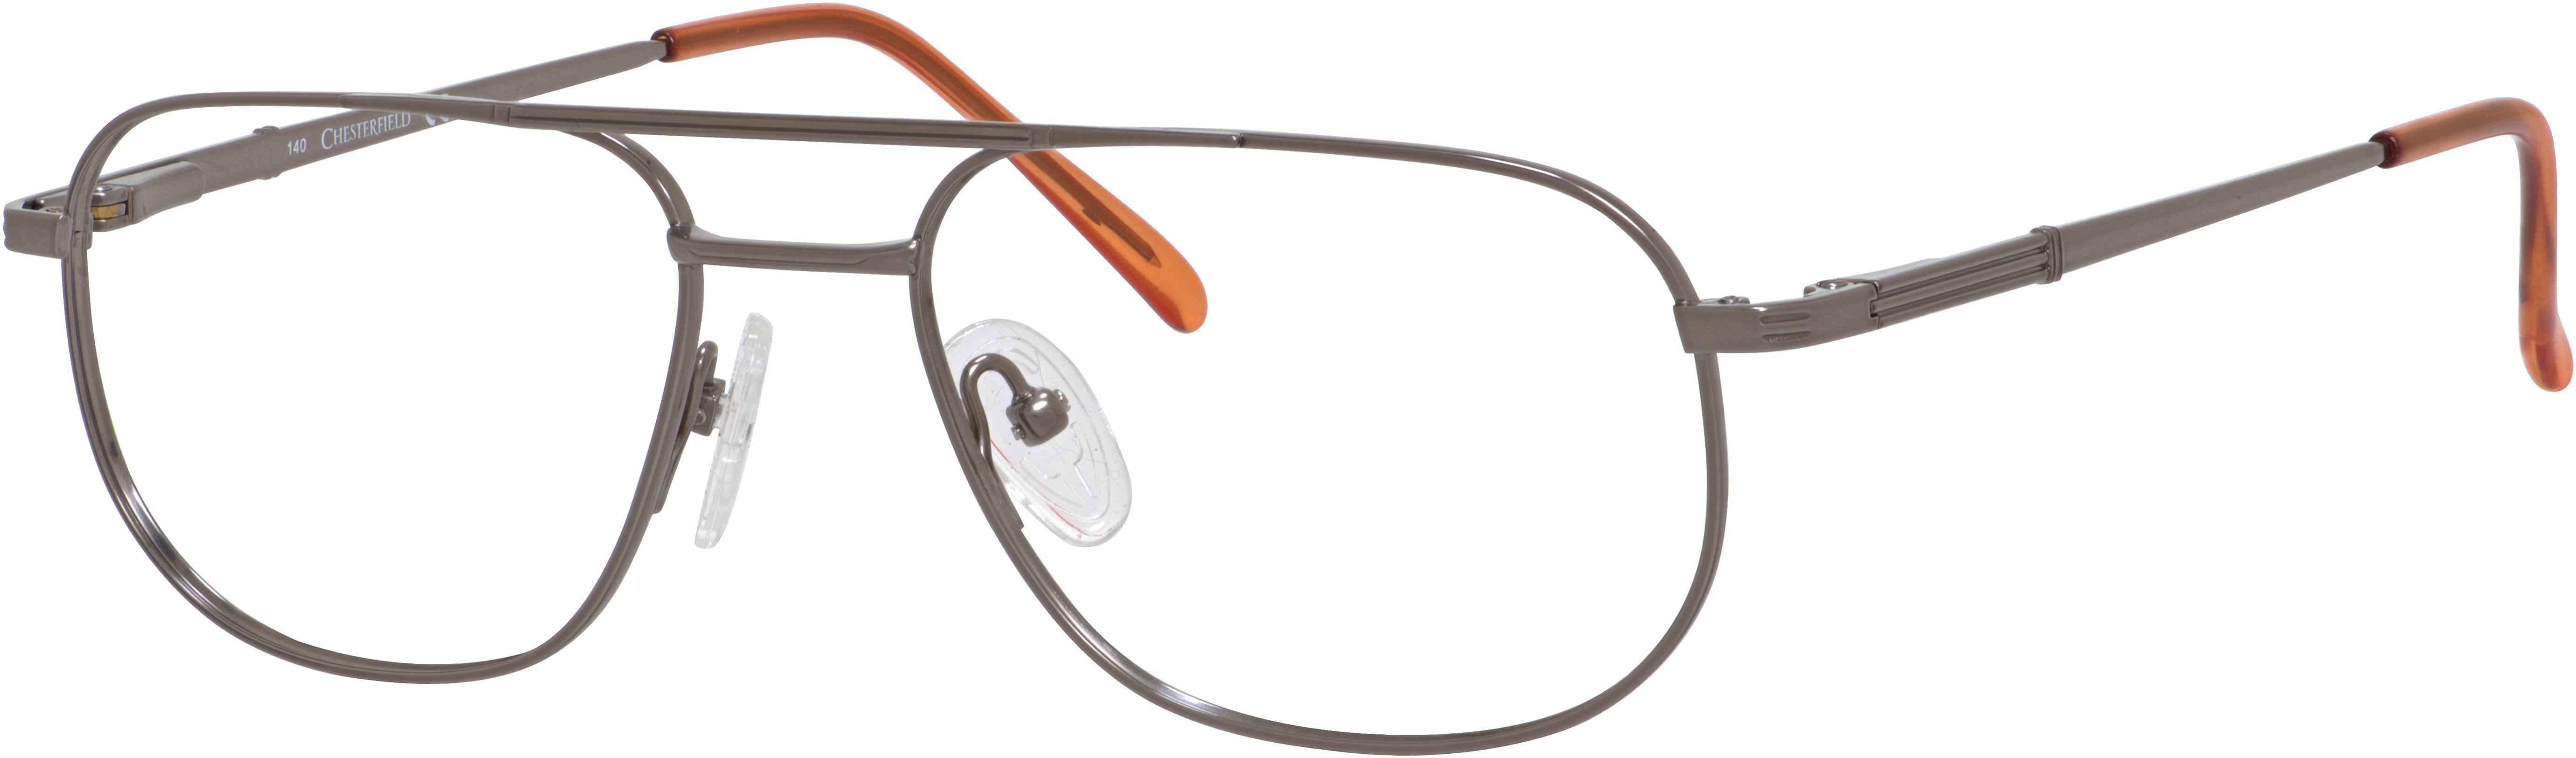  Chesterfield 352/T Rectangular Eyeglasses 01WK-01WK  Light Brown (00 Demo Lens)